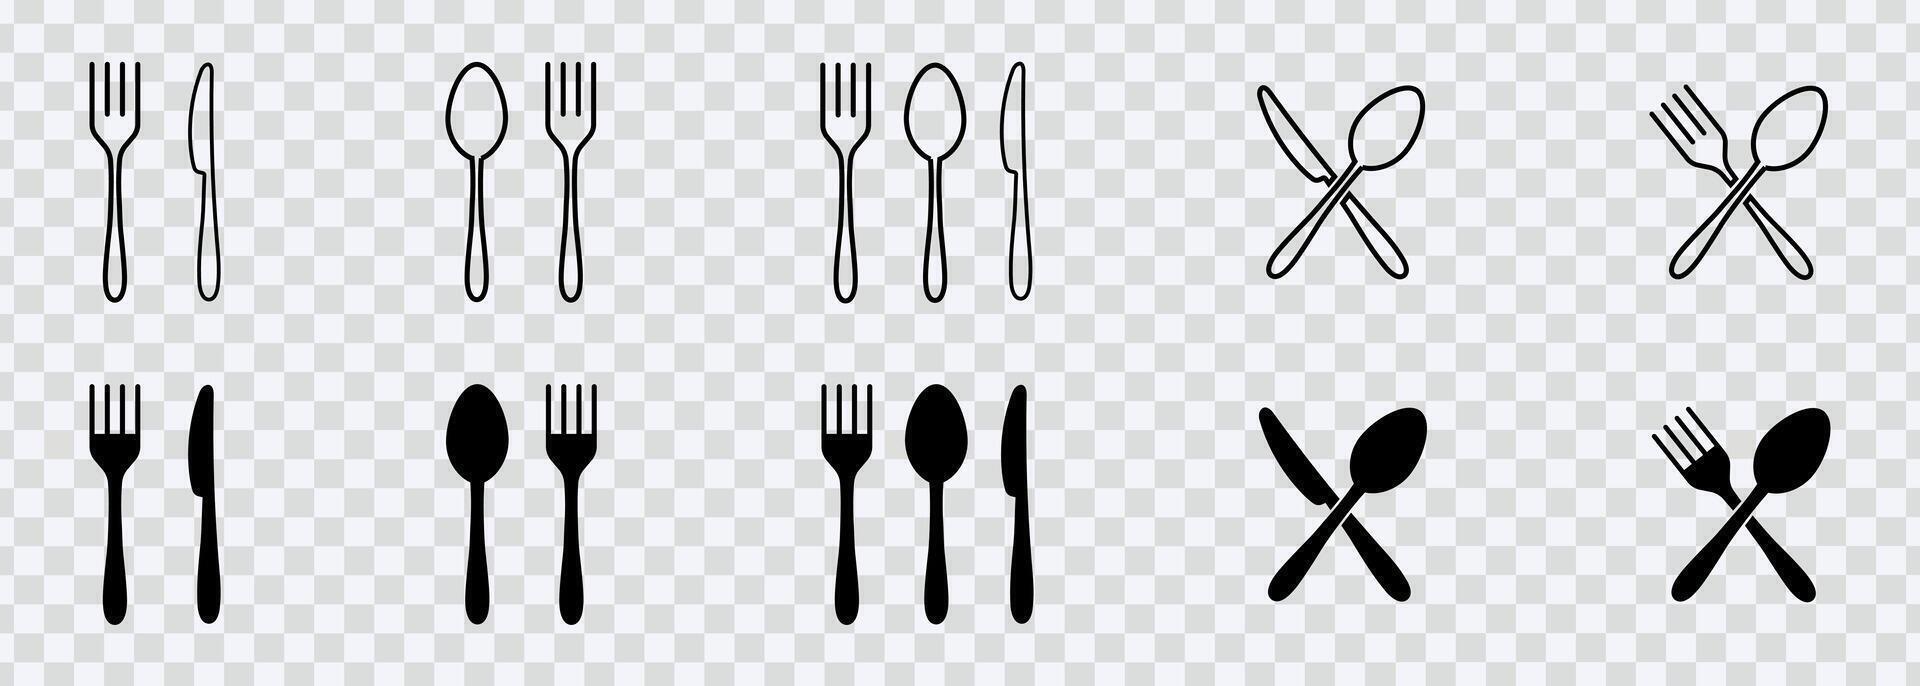 erheben Designs mit Teller Symbol einstellen mit Gericht, Gabel, Löffel, und Messer Illustrationen, perfekt zum verschiedene Anwendungen. vektor